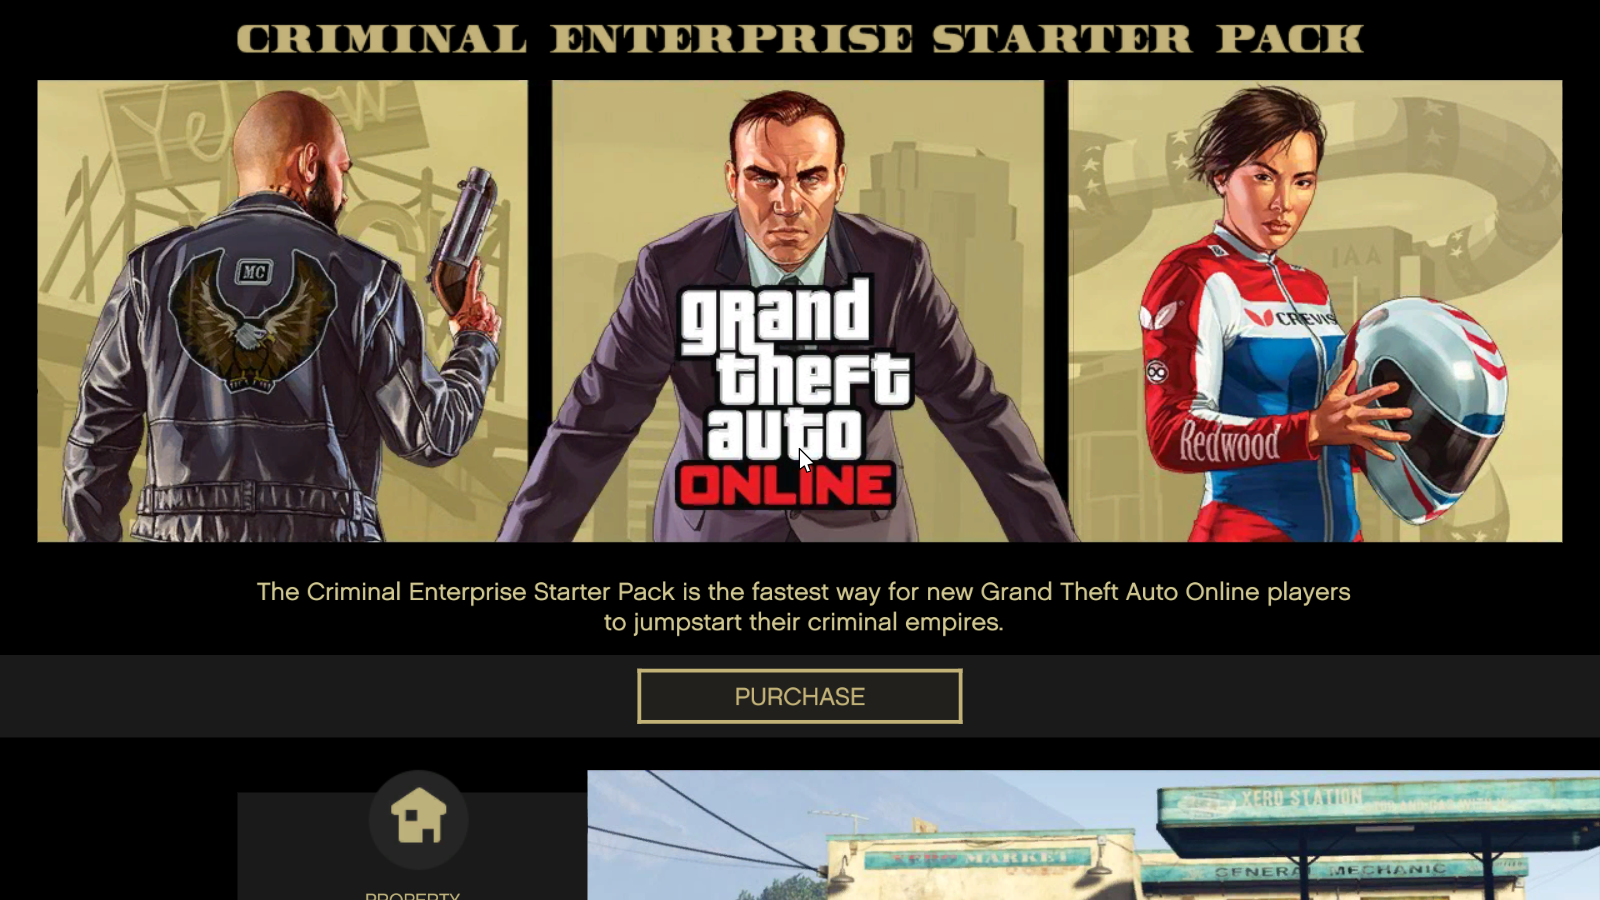 Criminal Enterprise Starter
Pack